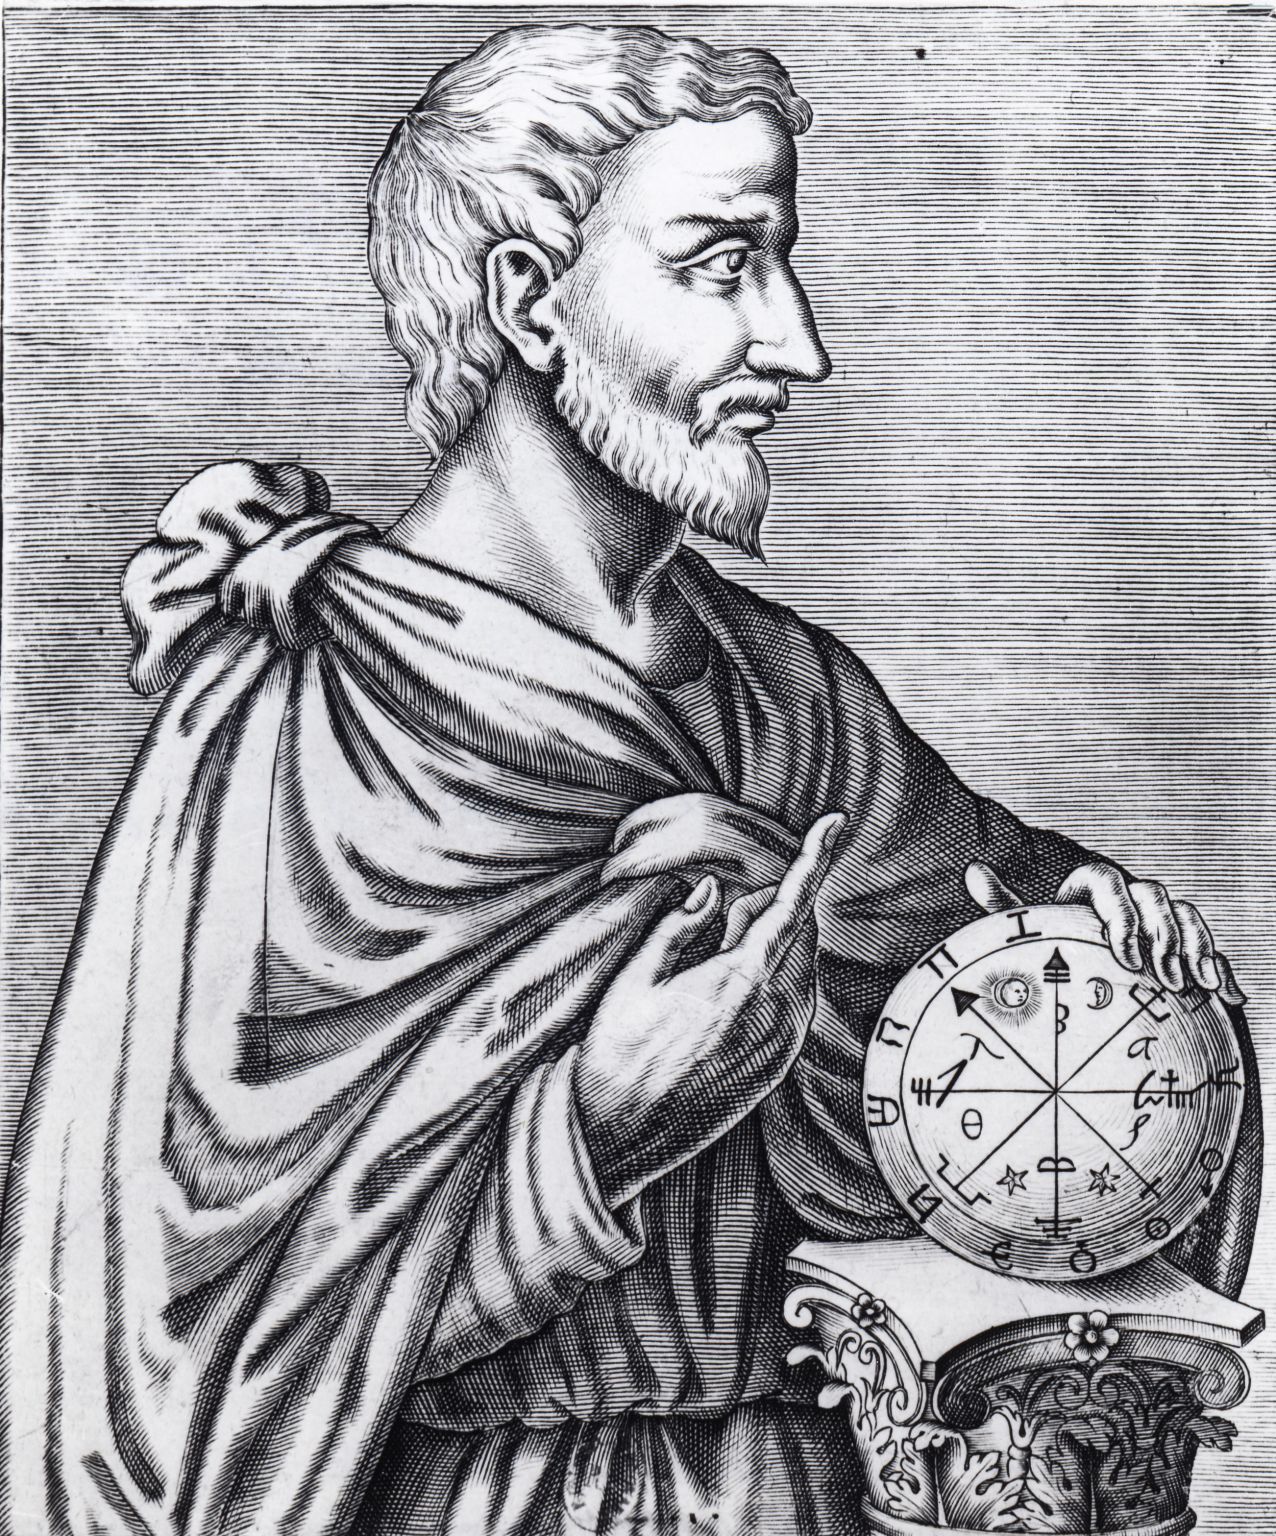 Pythagore (570-480 avant J.-C), philosophe et mathématicien grec. Gravure du XVIe siècle.